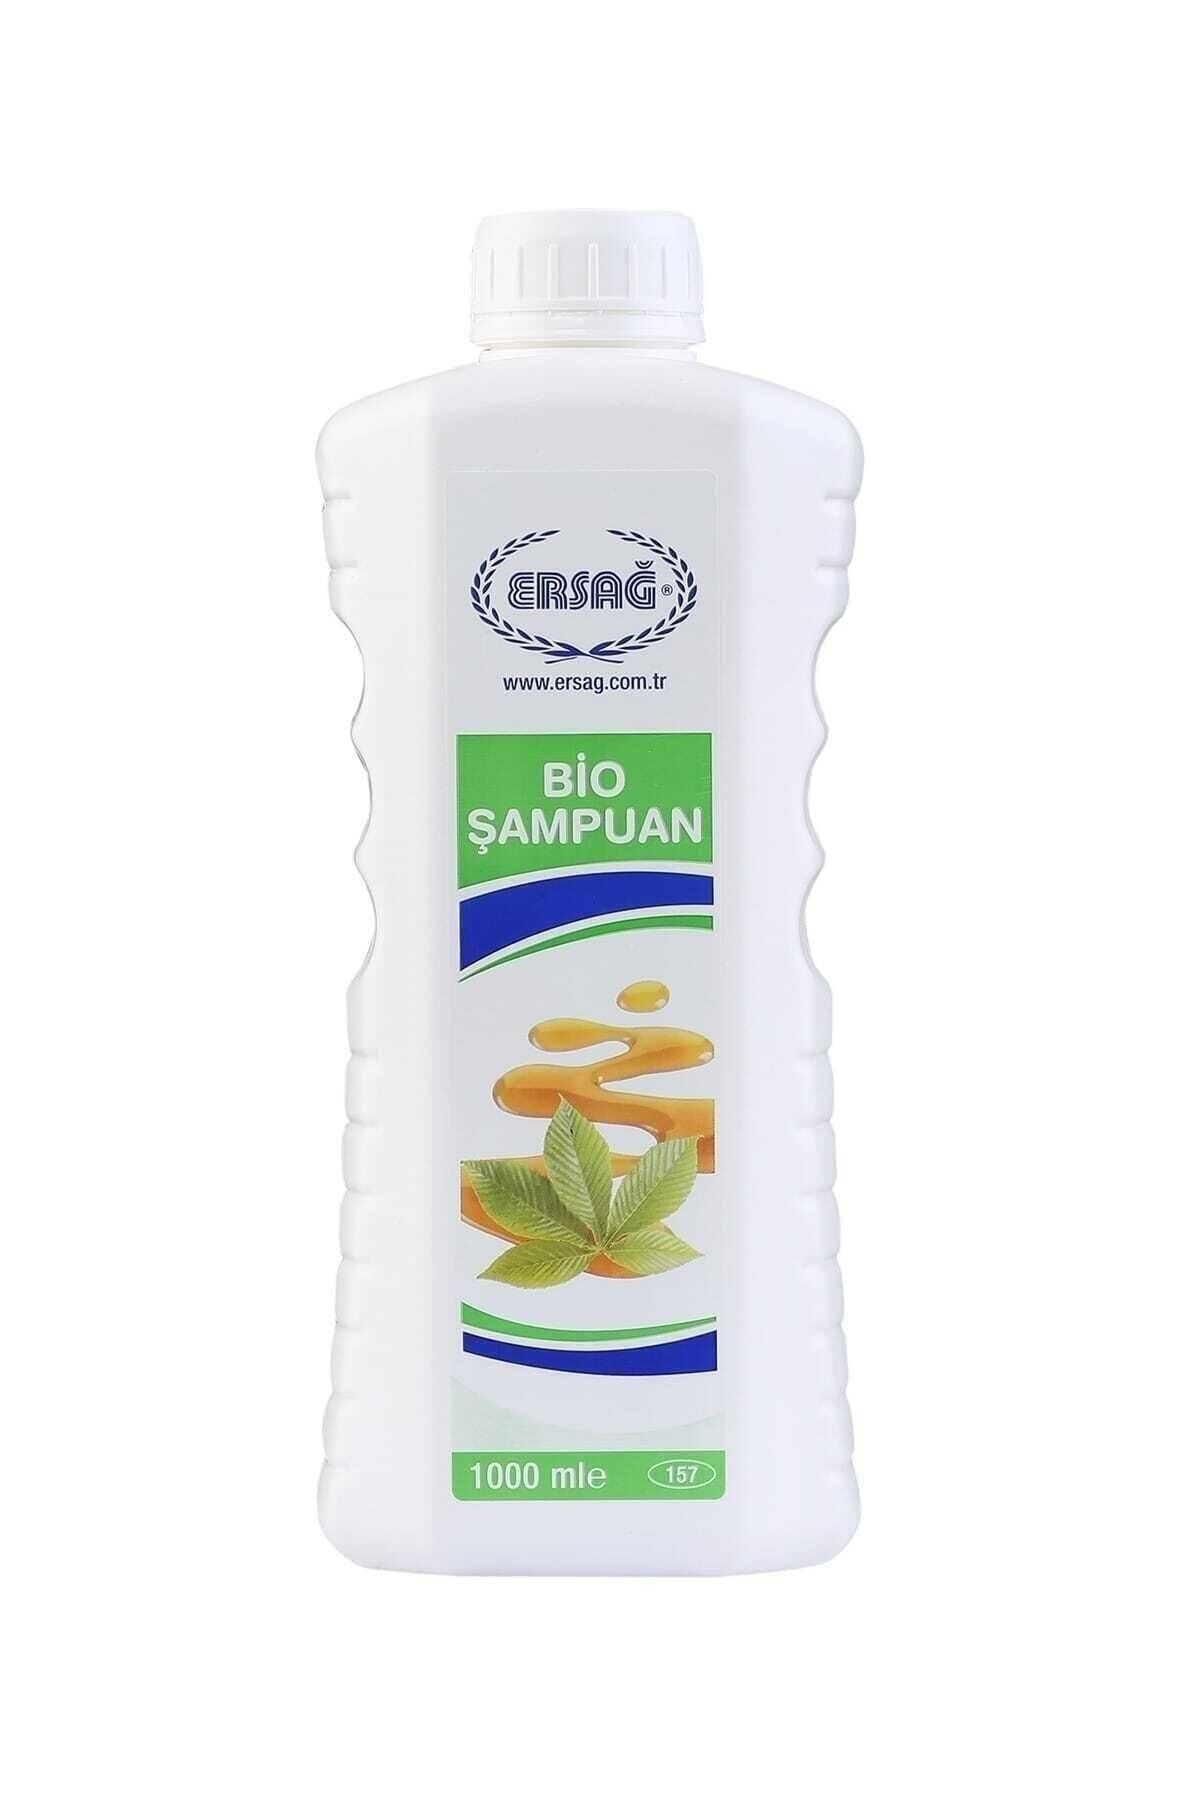 Ersağ Bio Şampuan 1000 ml - 157